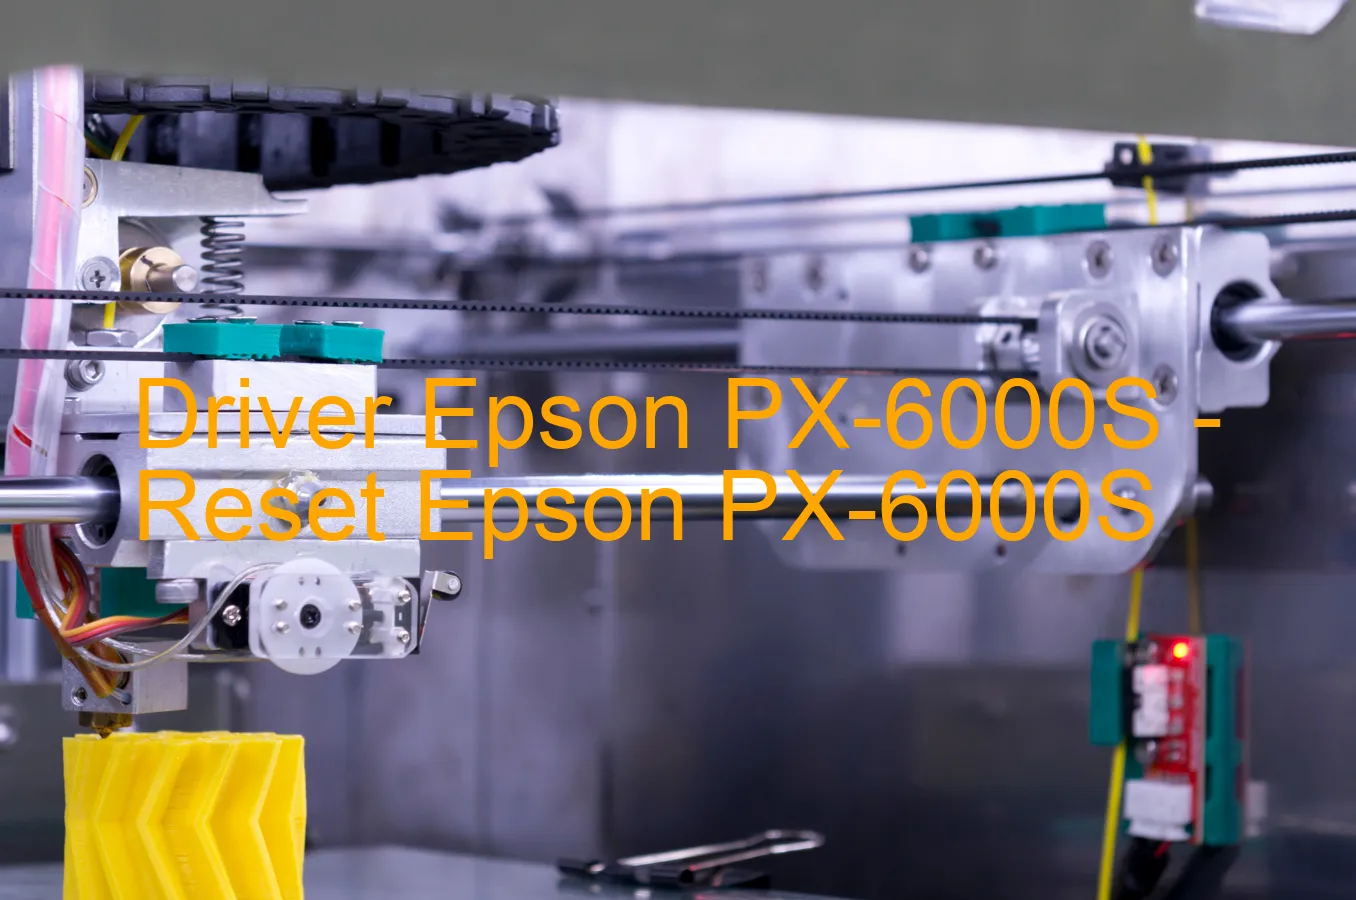 Epson PX-6000Sのドライバー、Epson PX-6000Sのリセットソフトウェア